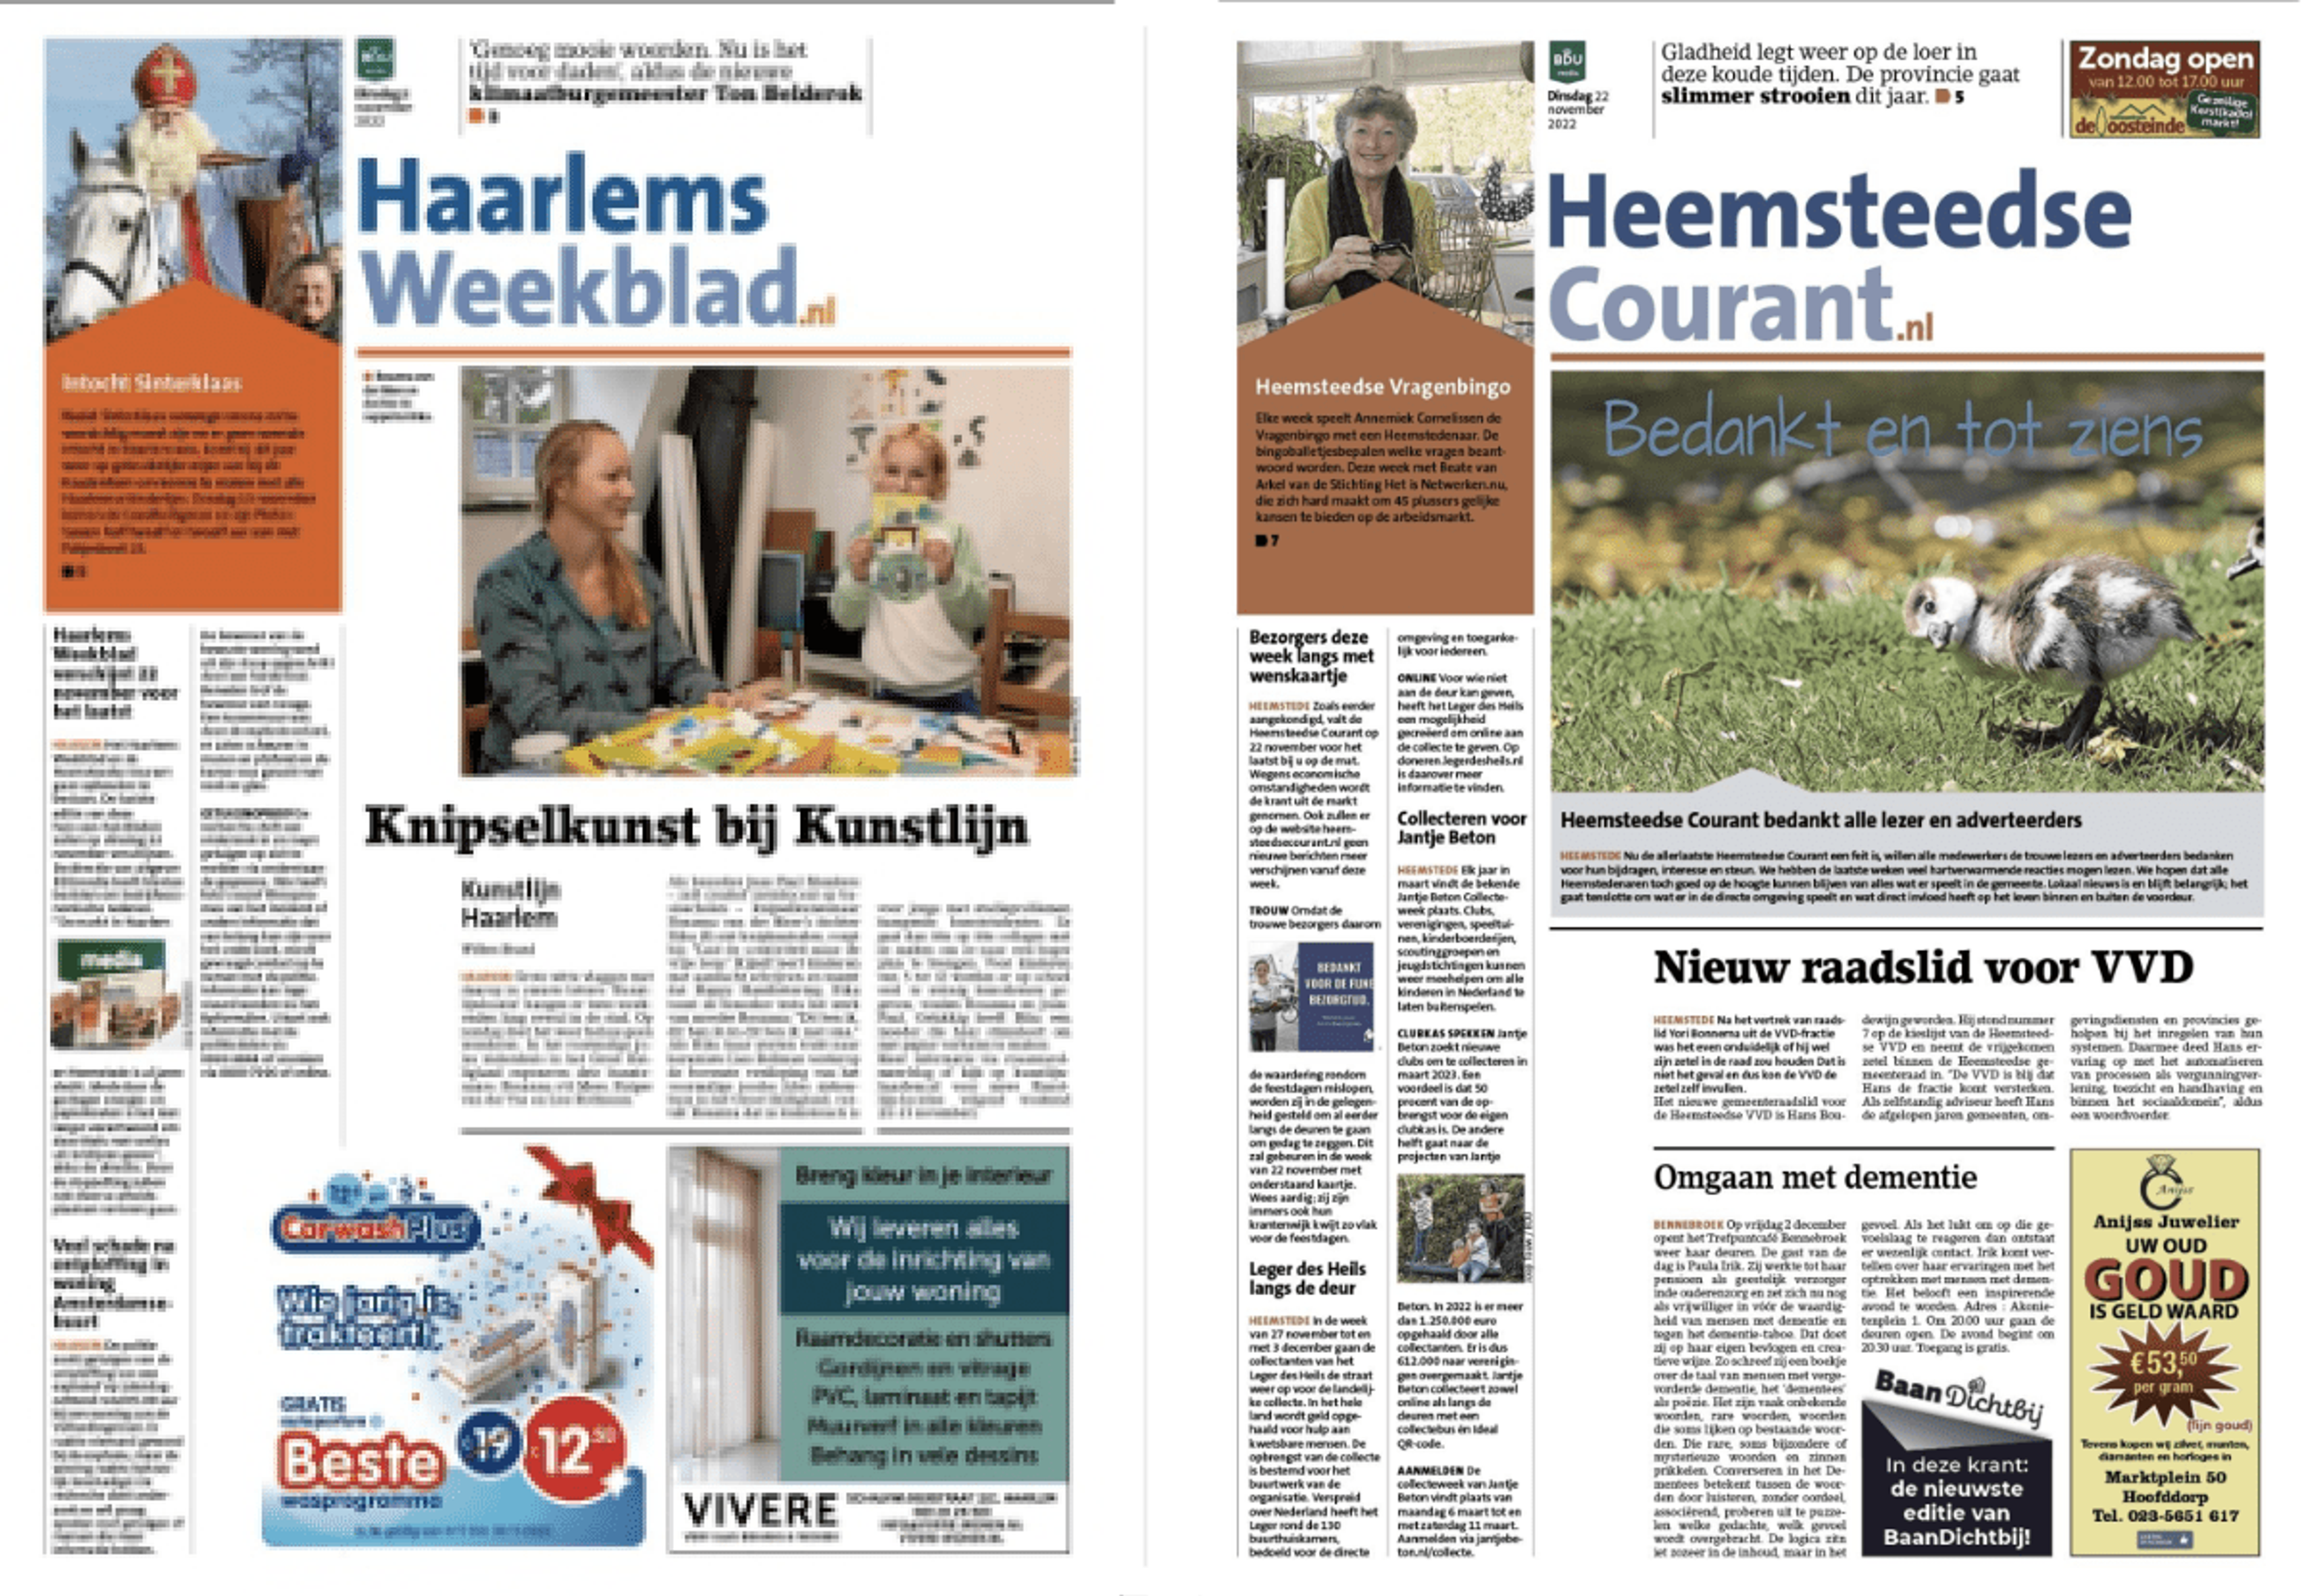 Haarlems Weekblad, de Heemsteedse Courant en lokaalaanzee.nl stoppen